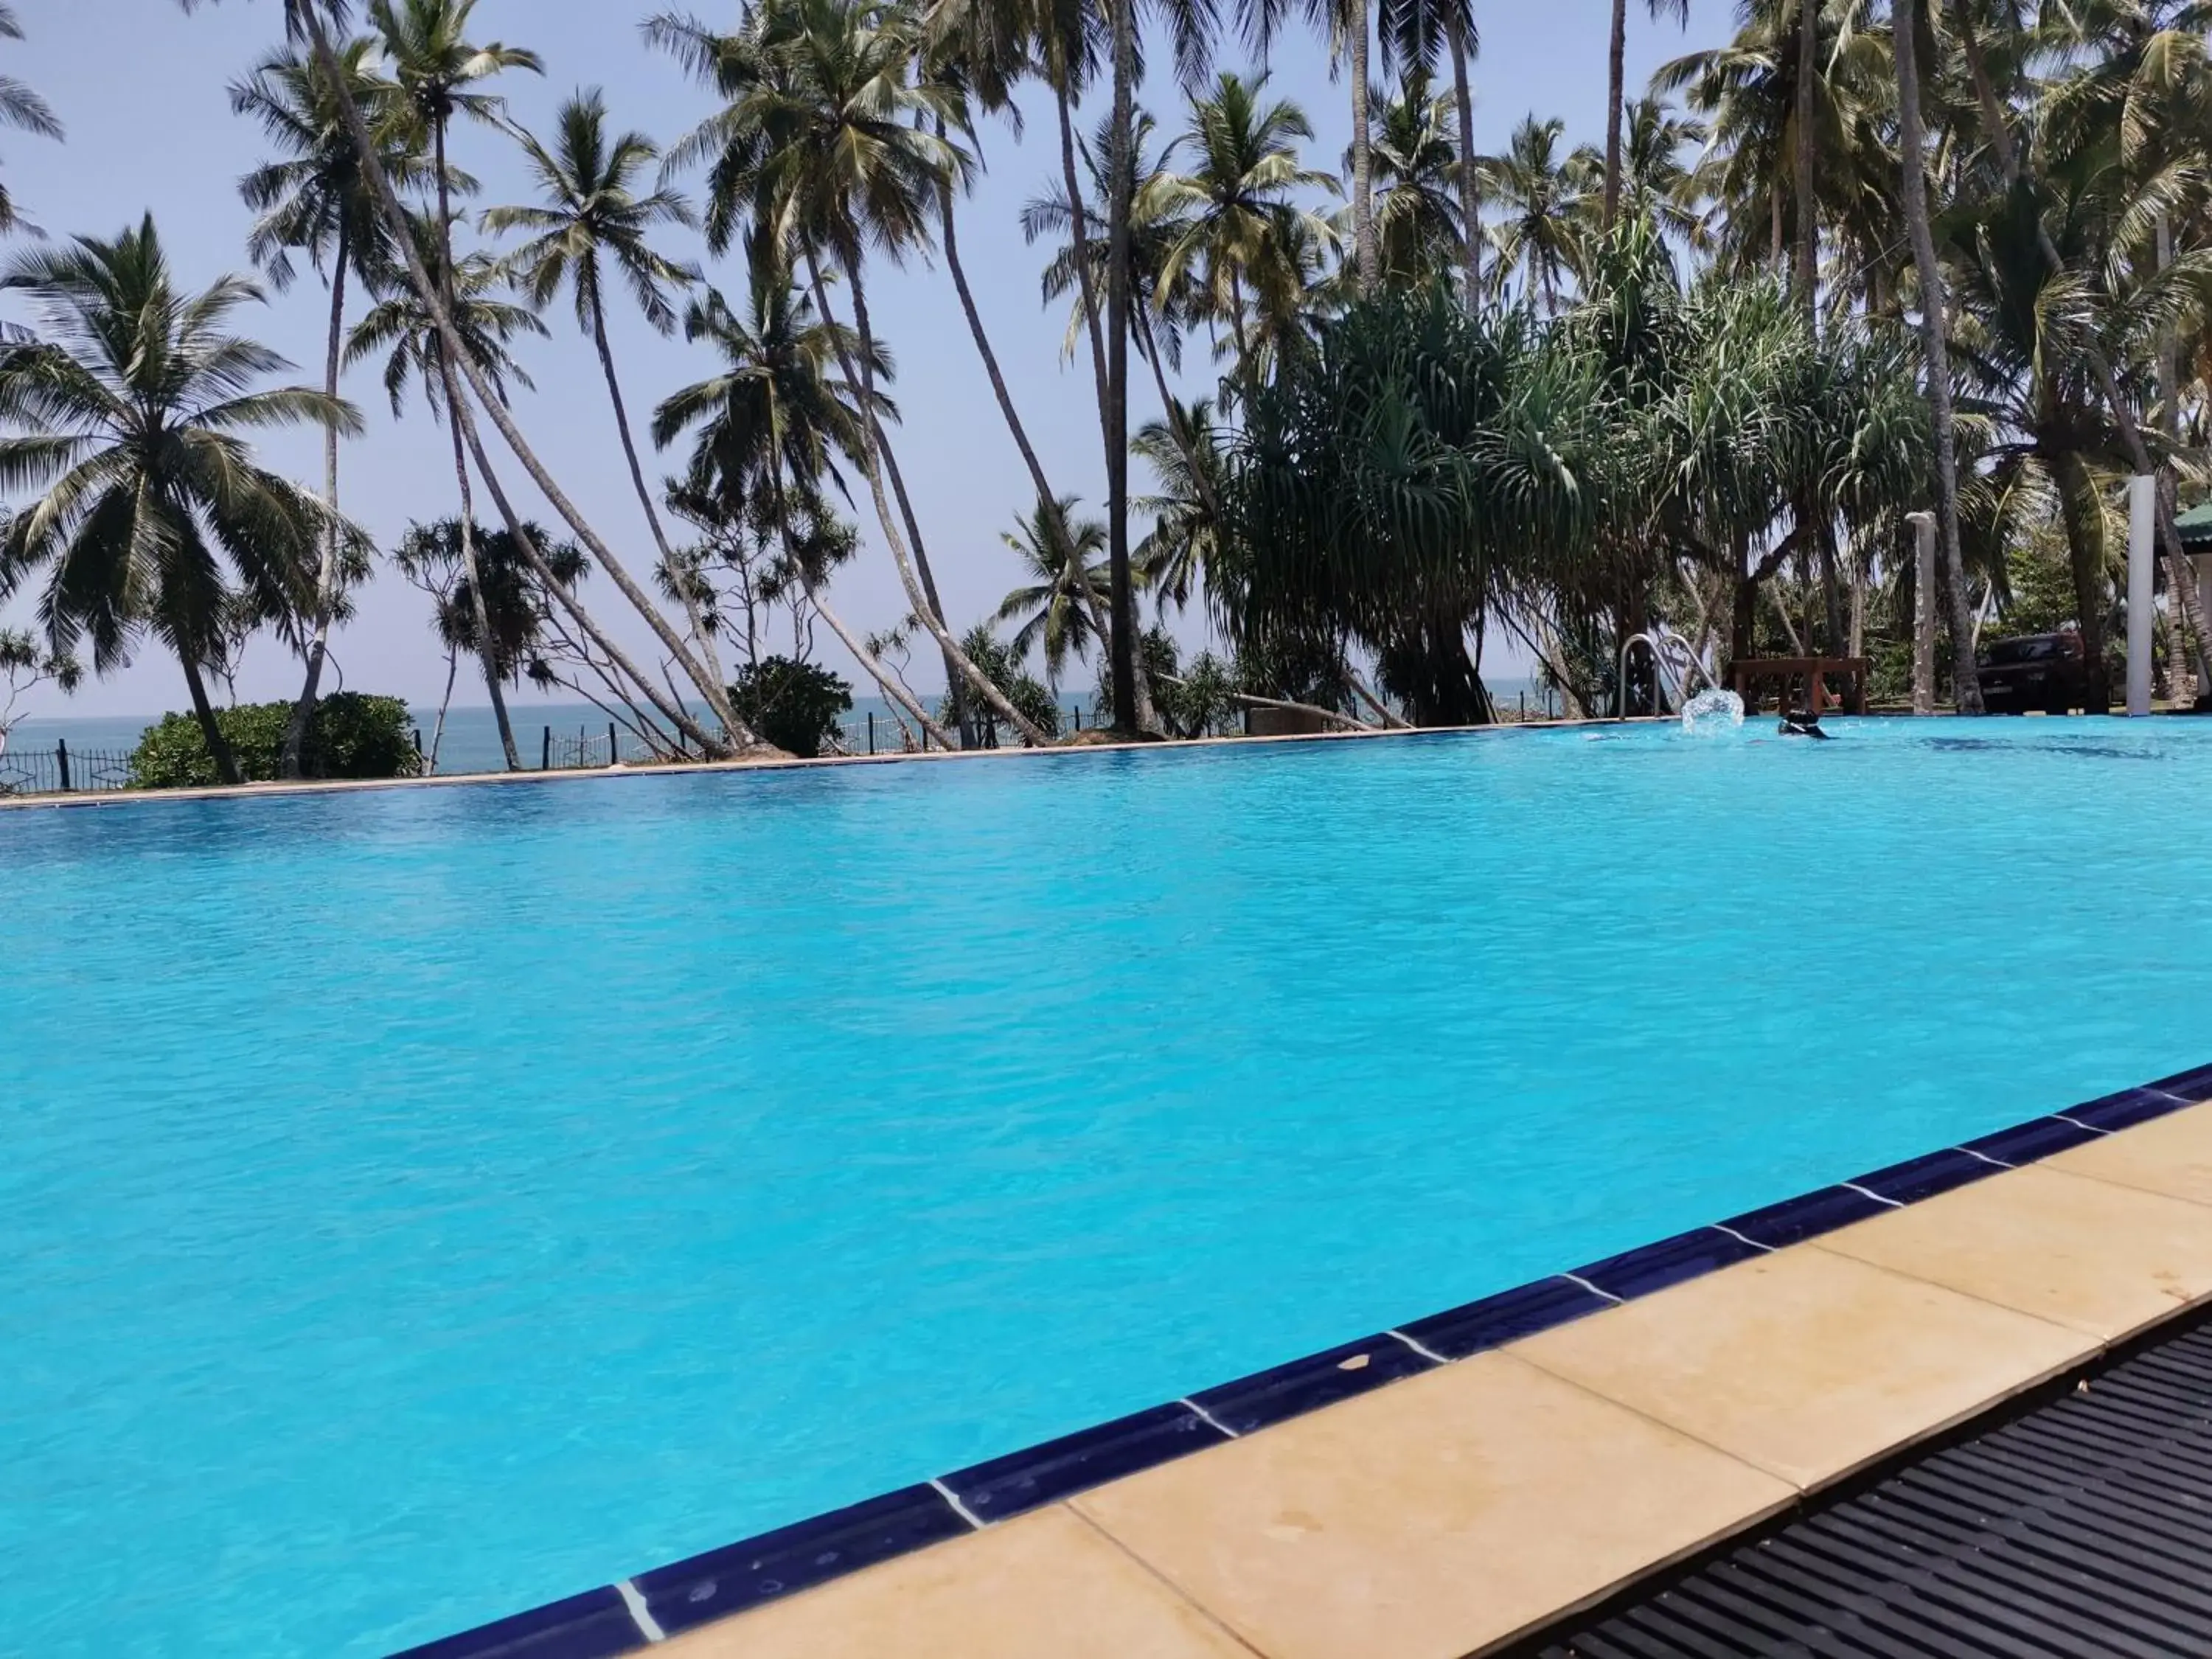 Swimming Pool in Helios Beach Resort